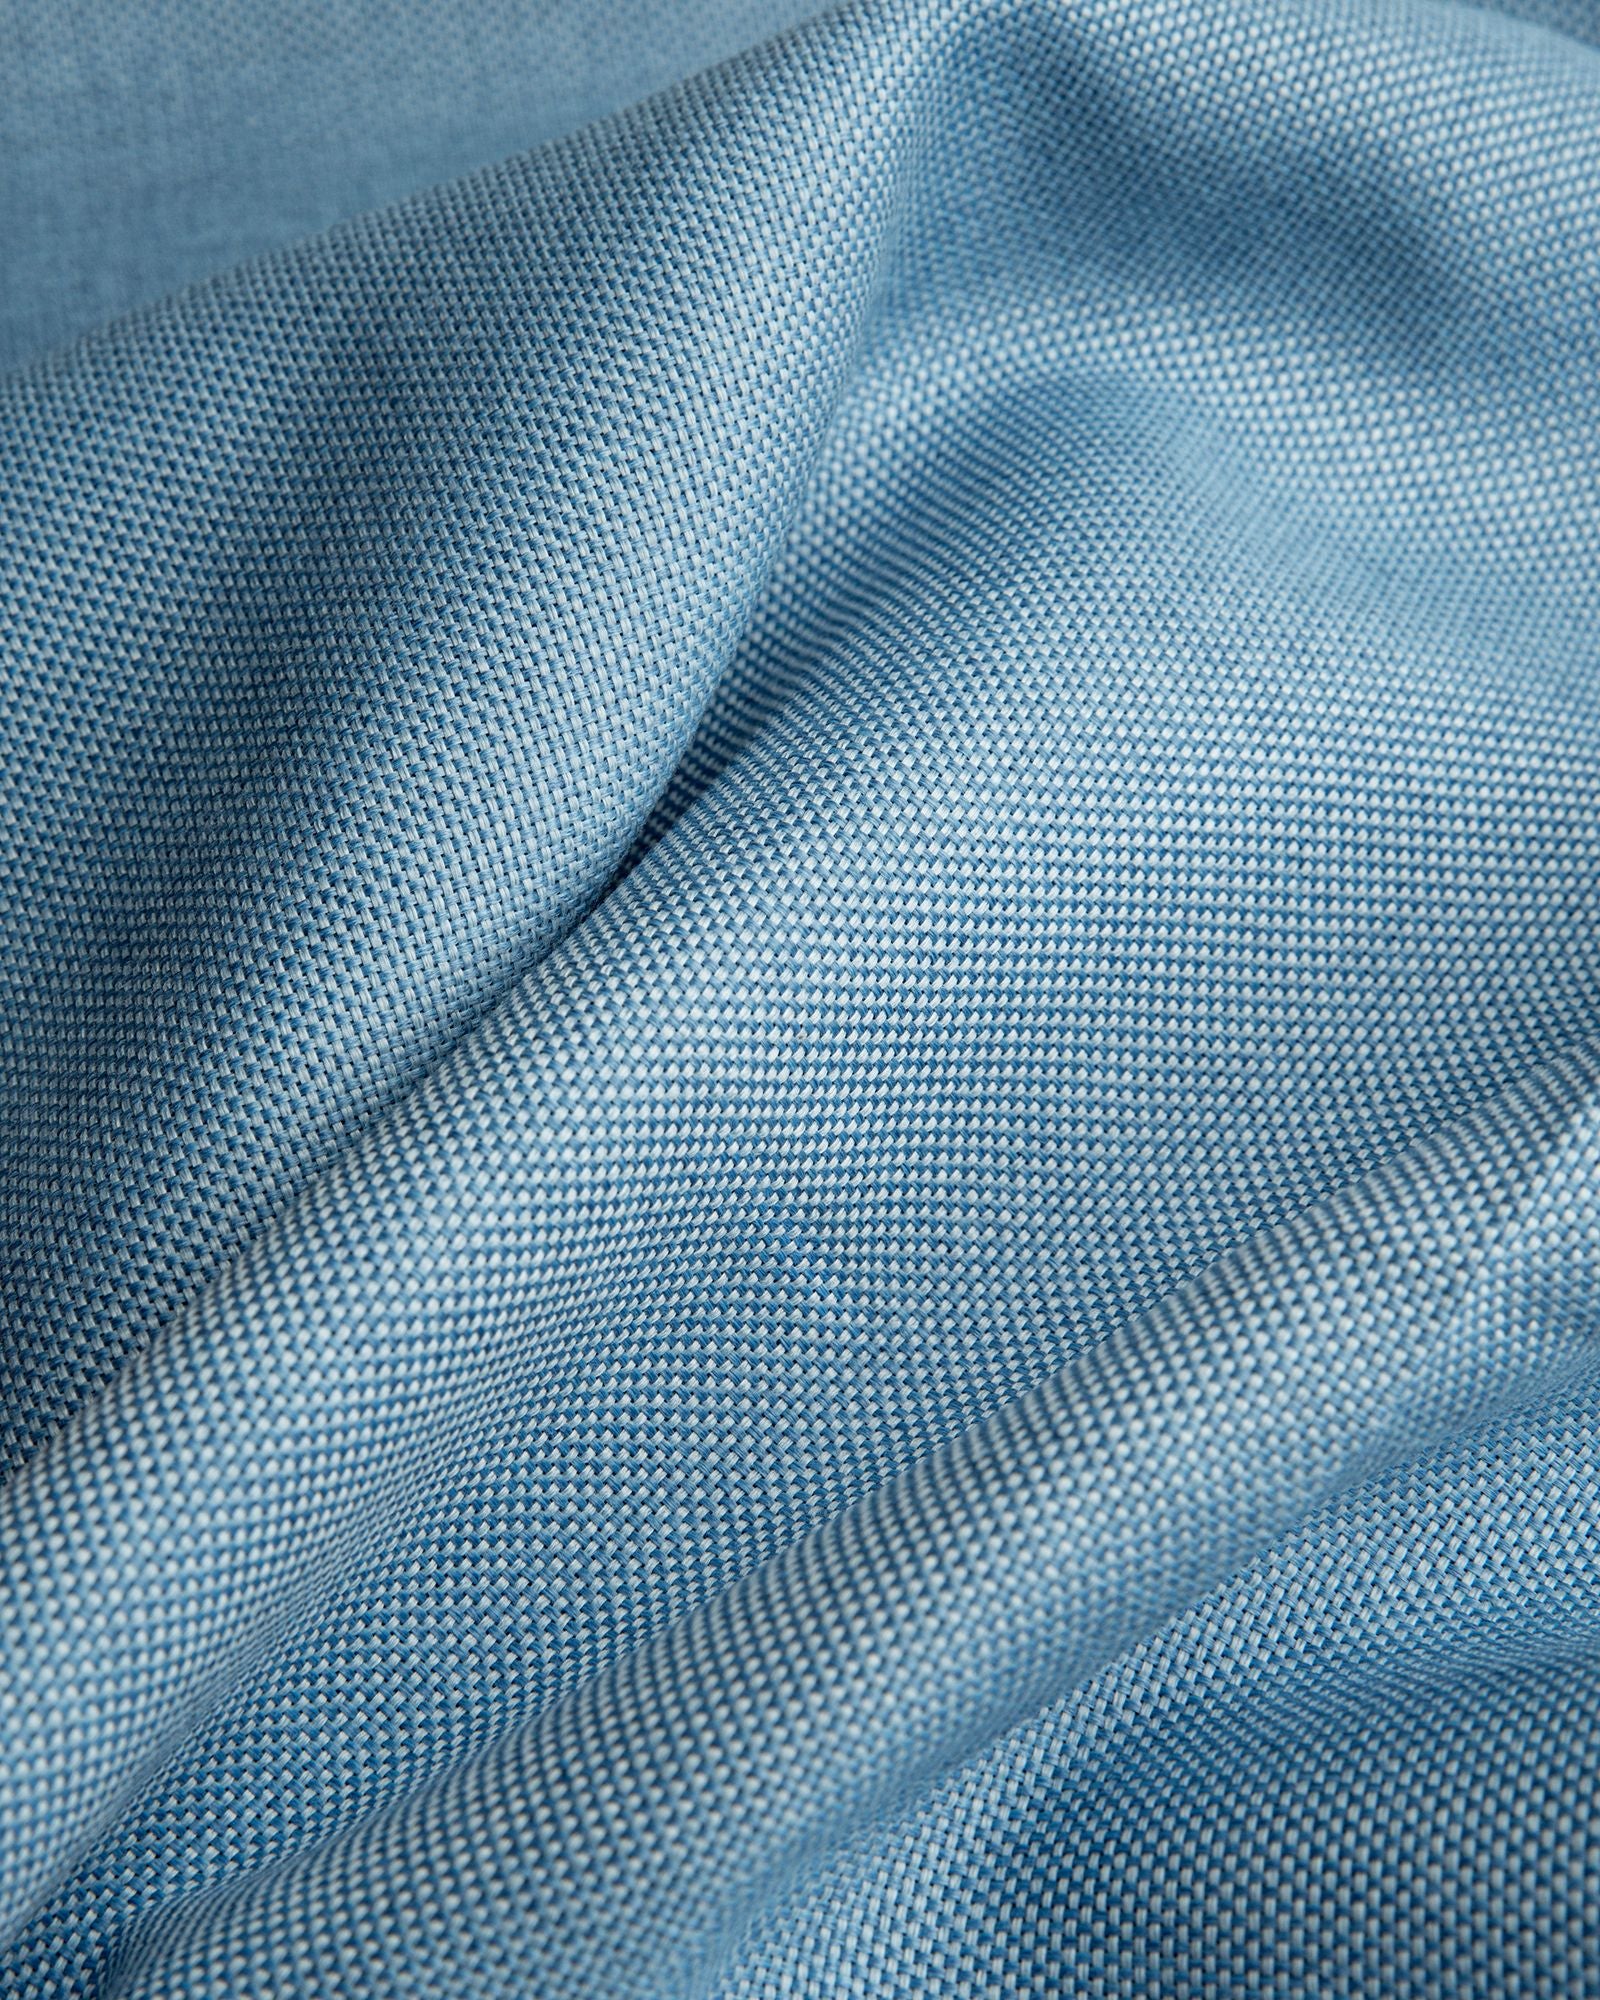 Größe: 150x 250 cm Farbe: hellblau #farbe_hellblau